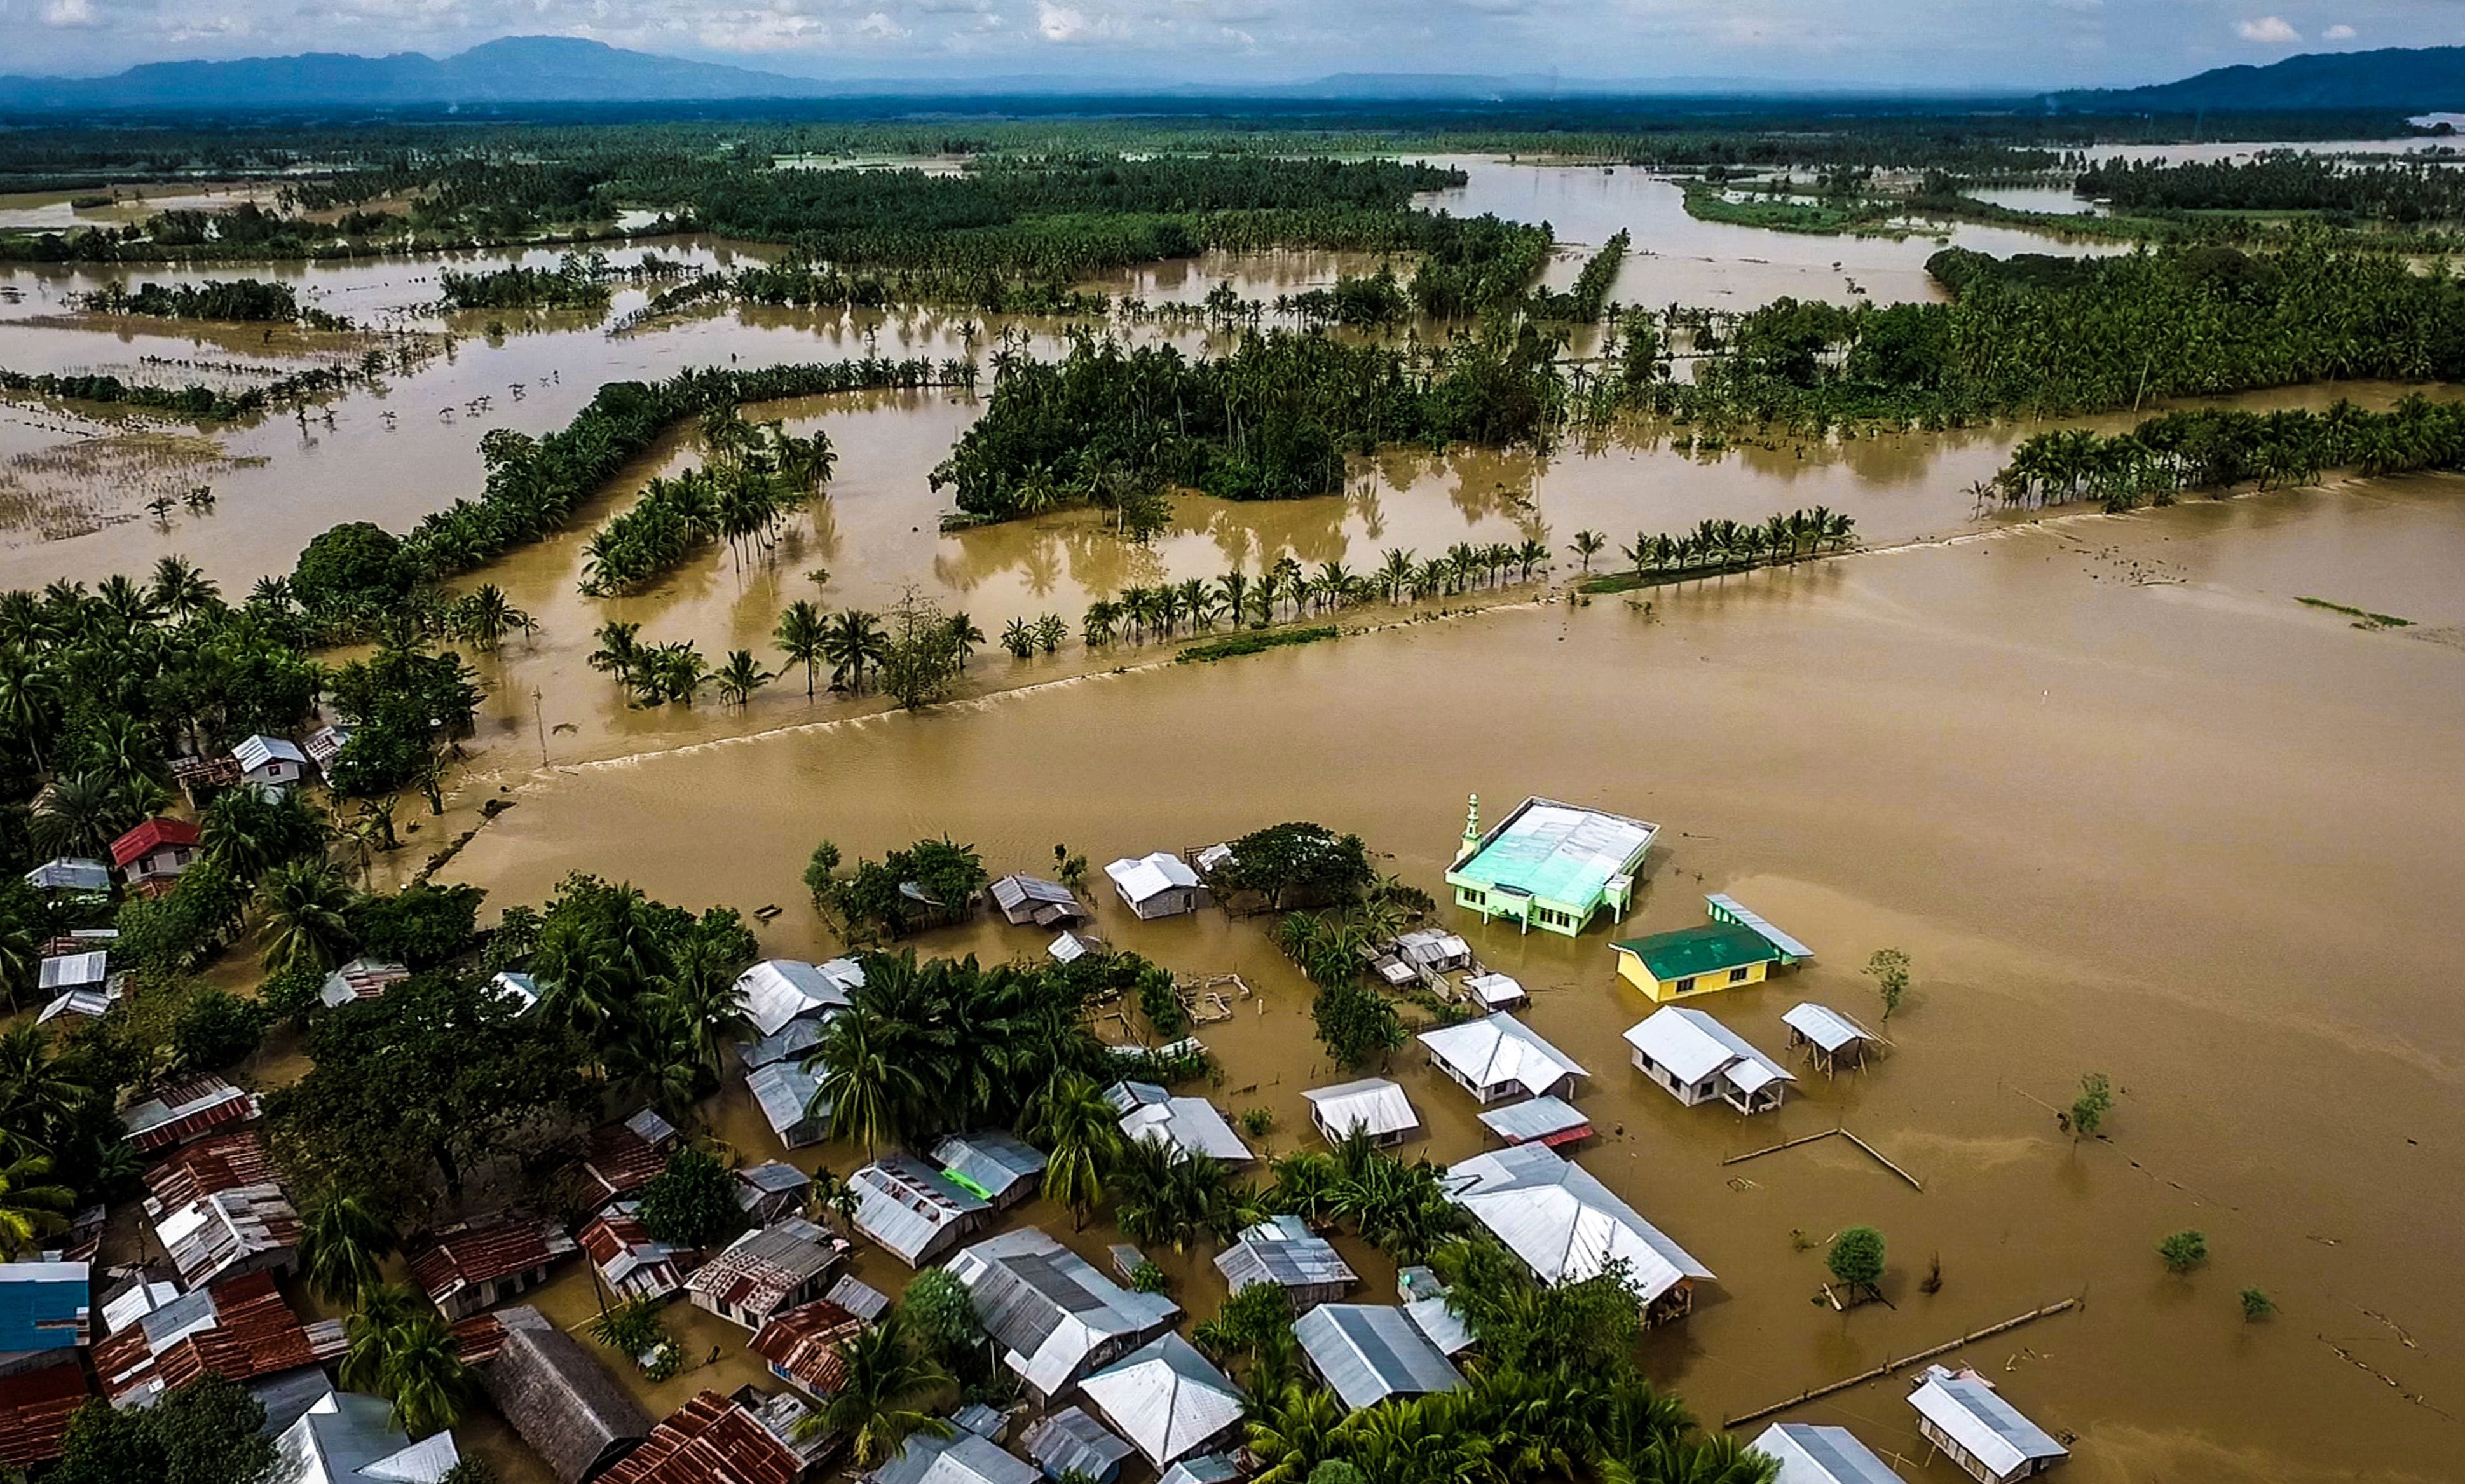 Trước đó, bão Tembin ập vào Philippines hôm 22/12 với sức gió lên tới 90 km/h. Cảnh sát, các binh sĩ và nhân viên tình nguyện đang chạy đua với thời gian và cố gắng tìm kiếm thi thể các nạn nhân trong đống đổ nát hoang tàn. Ảnh chụp khung cảnh trên đảo Mindanao.